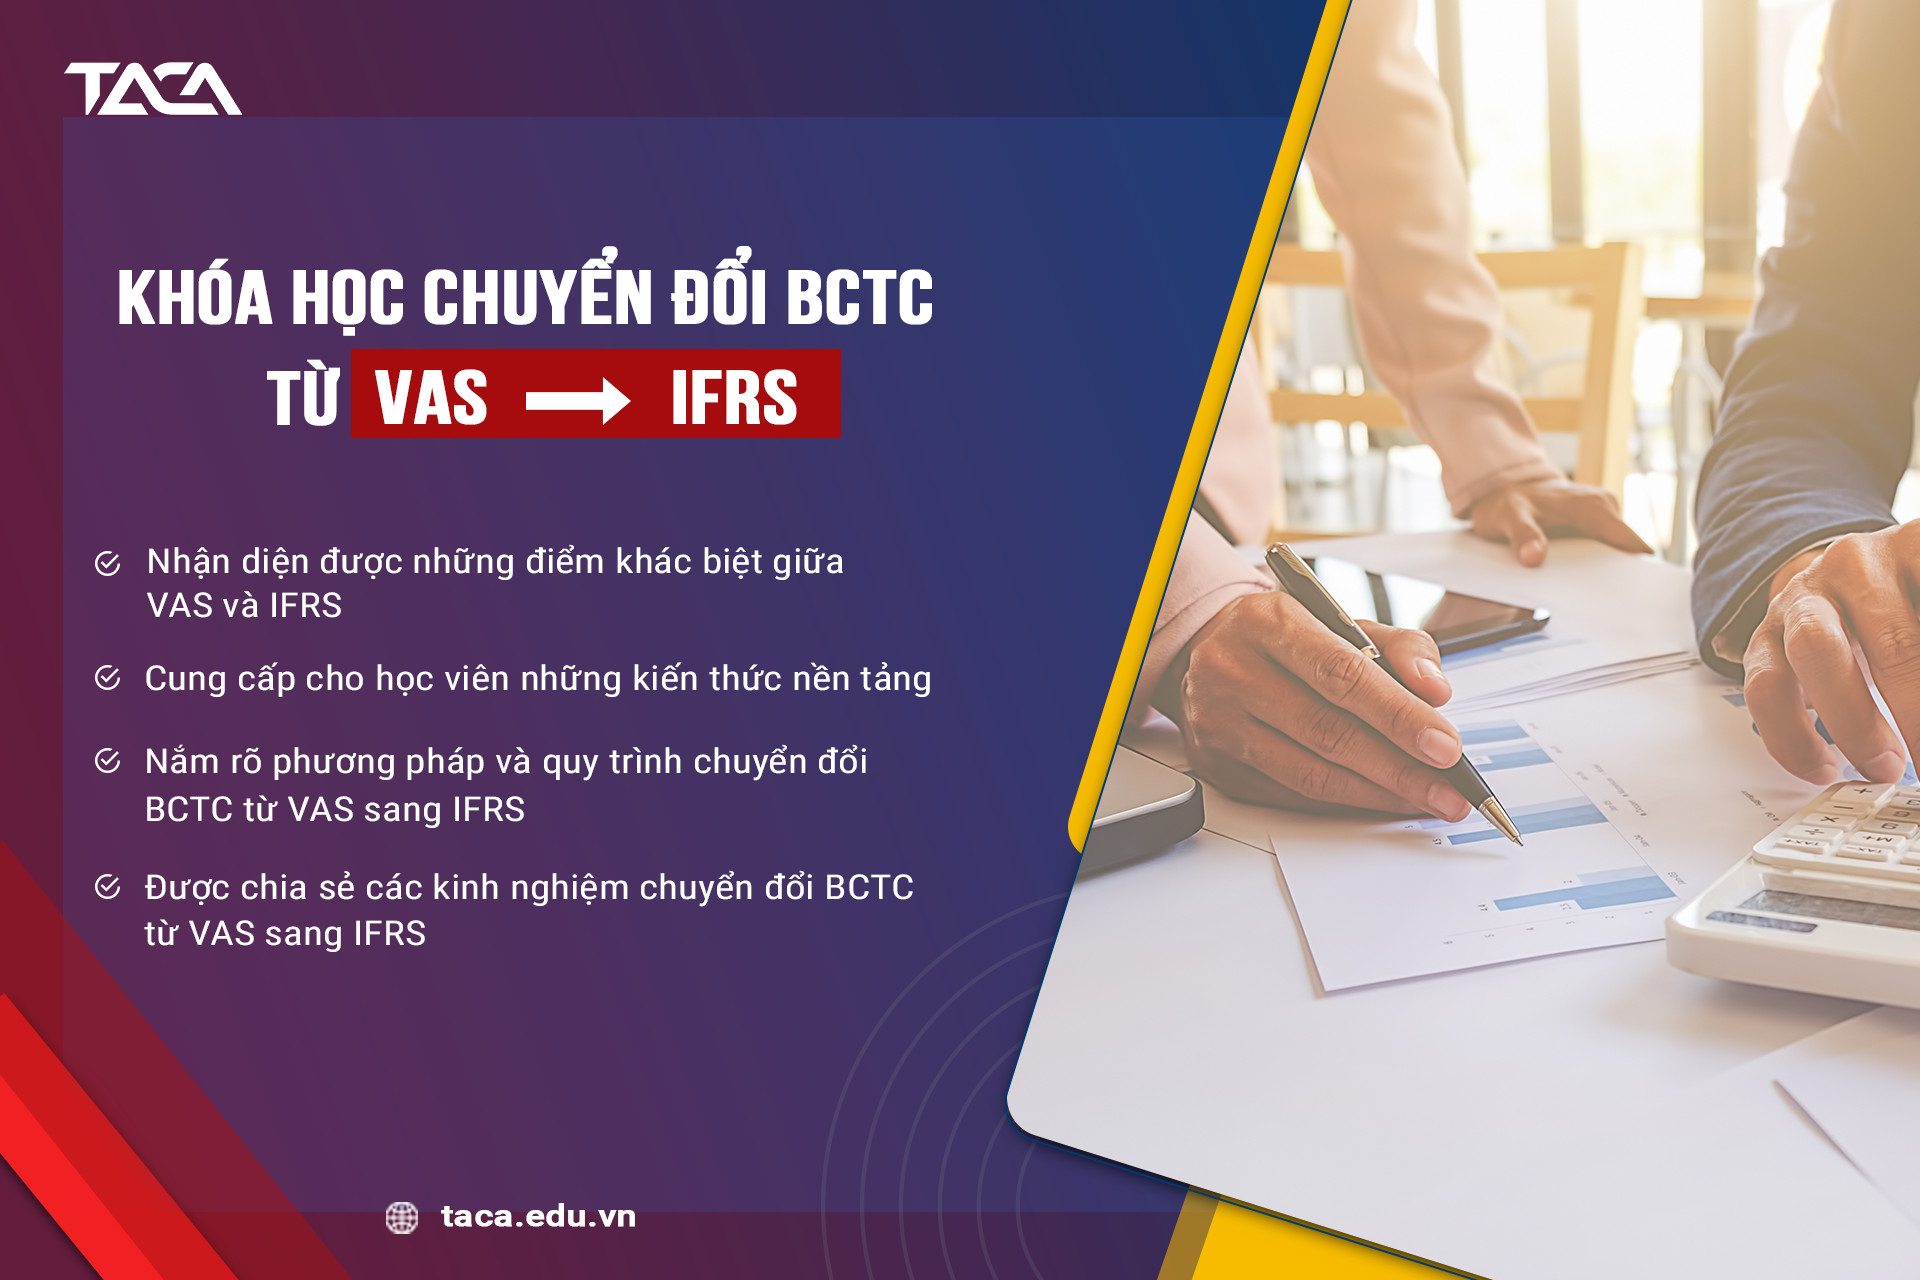 Khóa học chuyển đổi BCTC từ VAS sang IFRS